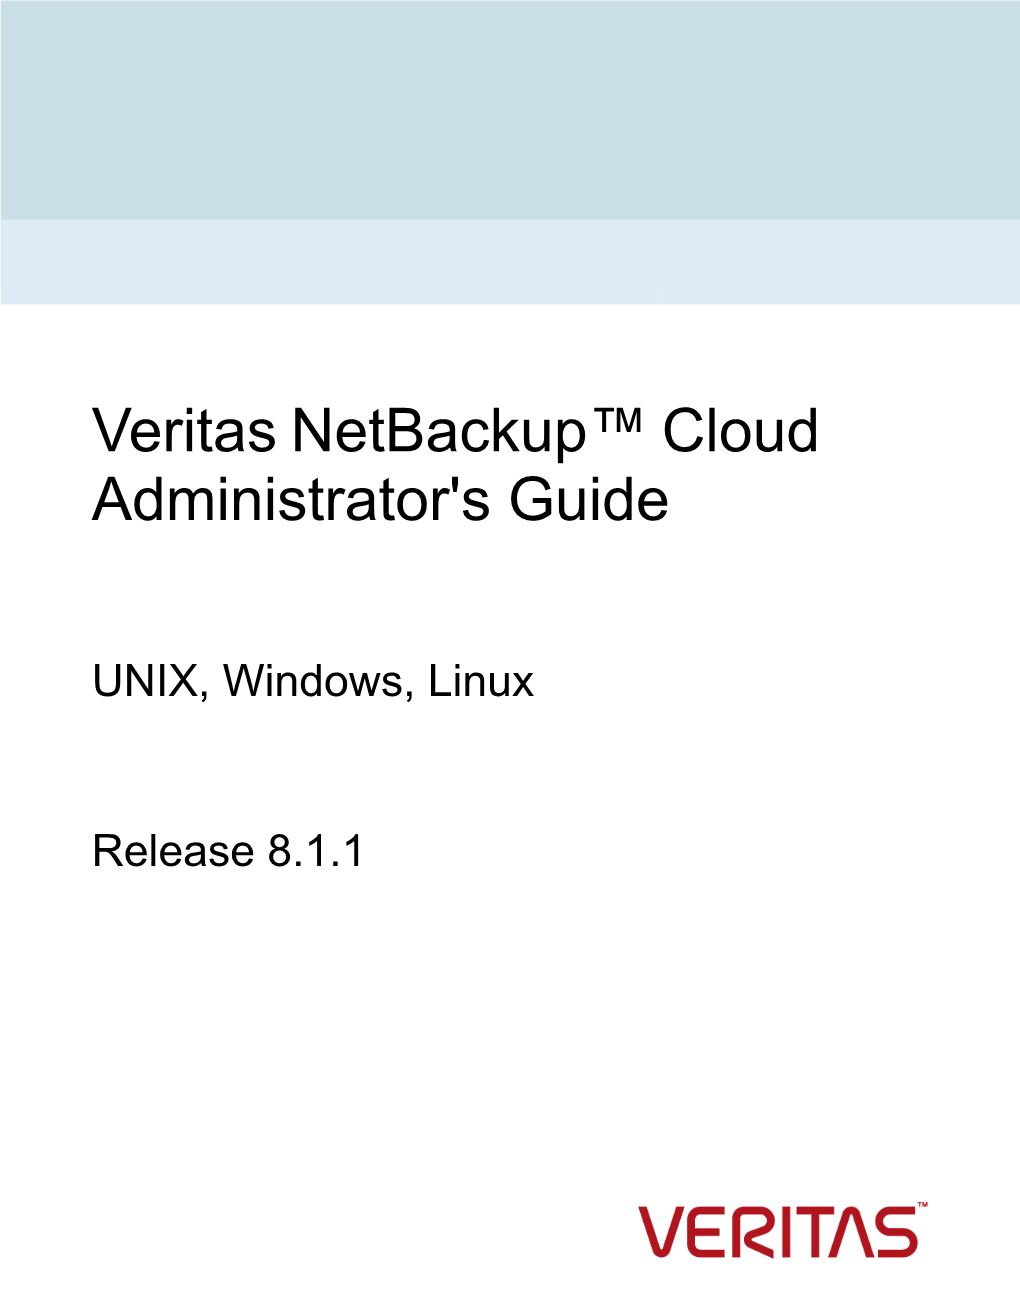 Veritas Netbackup™ Cloud Administrator's Guide: UNIX